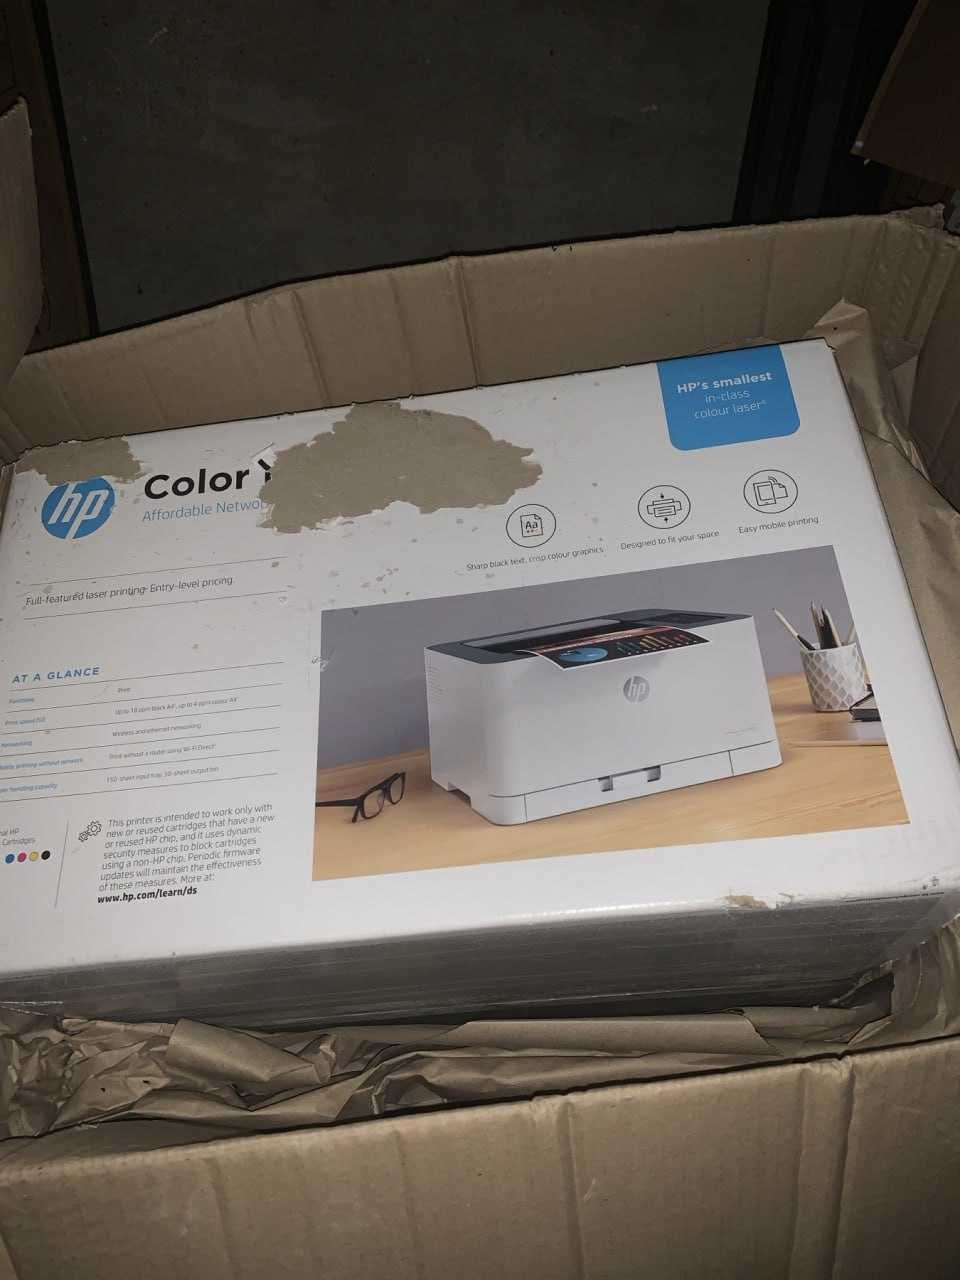 Принтер HP Color Laser 150nw (4ZB95A) Є НА СКЛАДІ ТОП ЦІНА